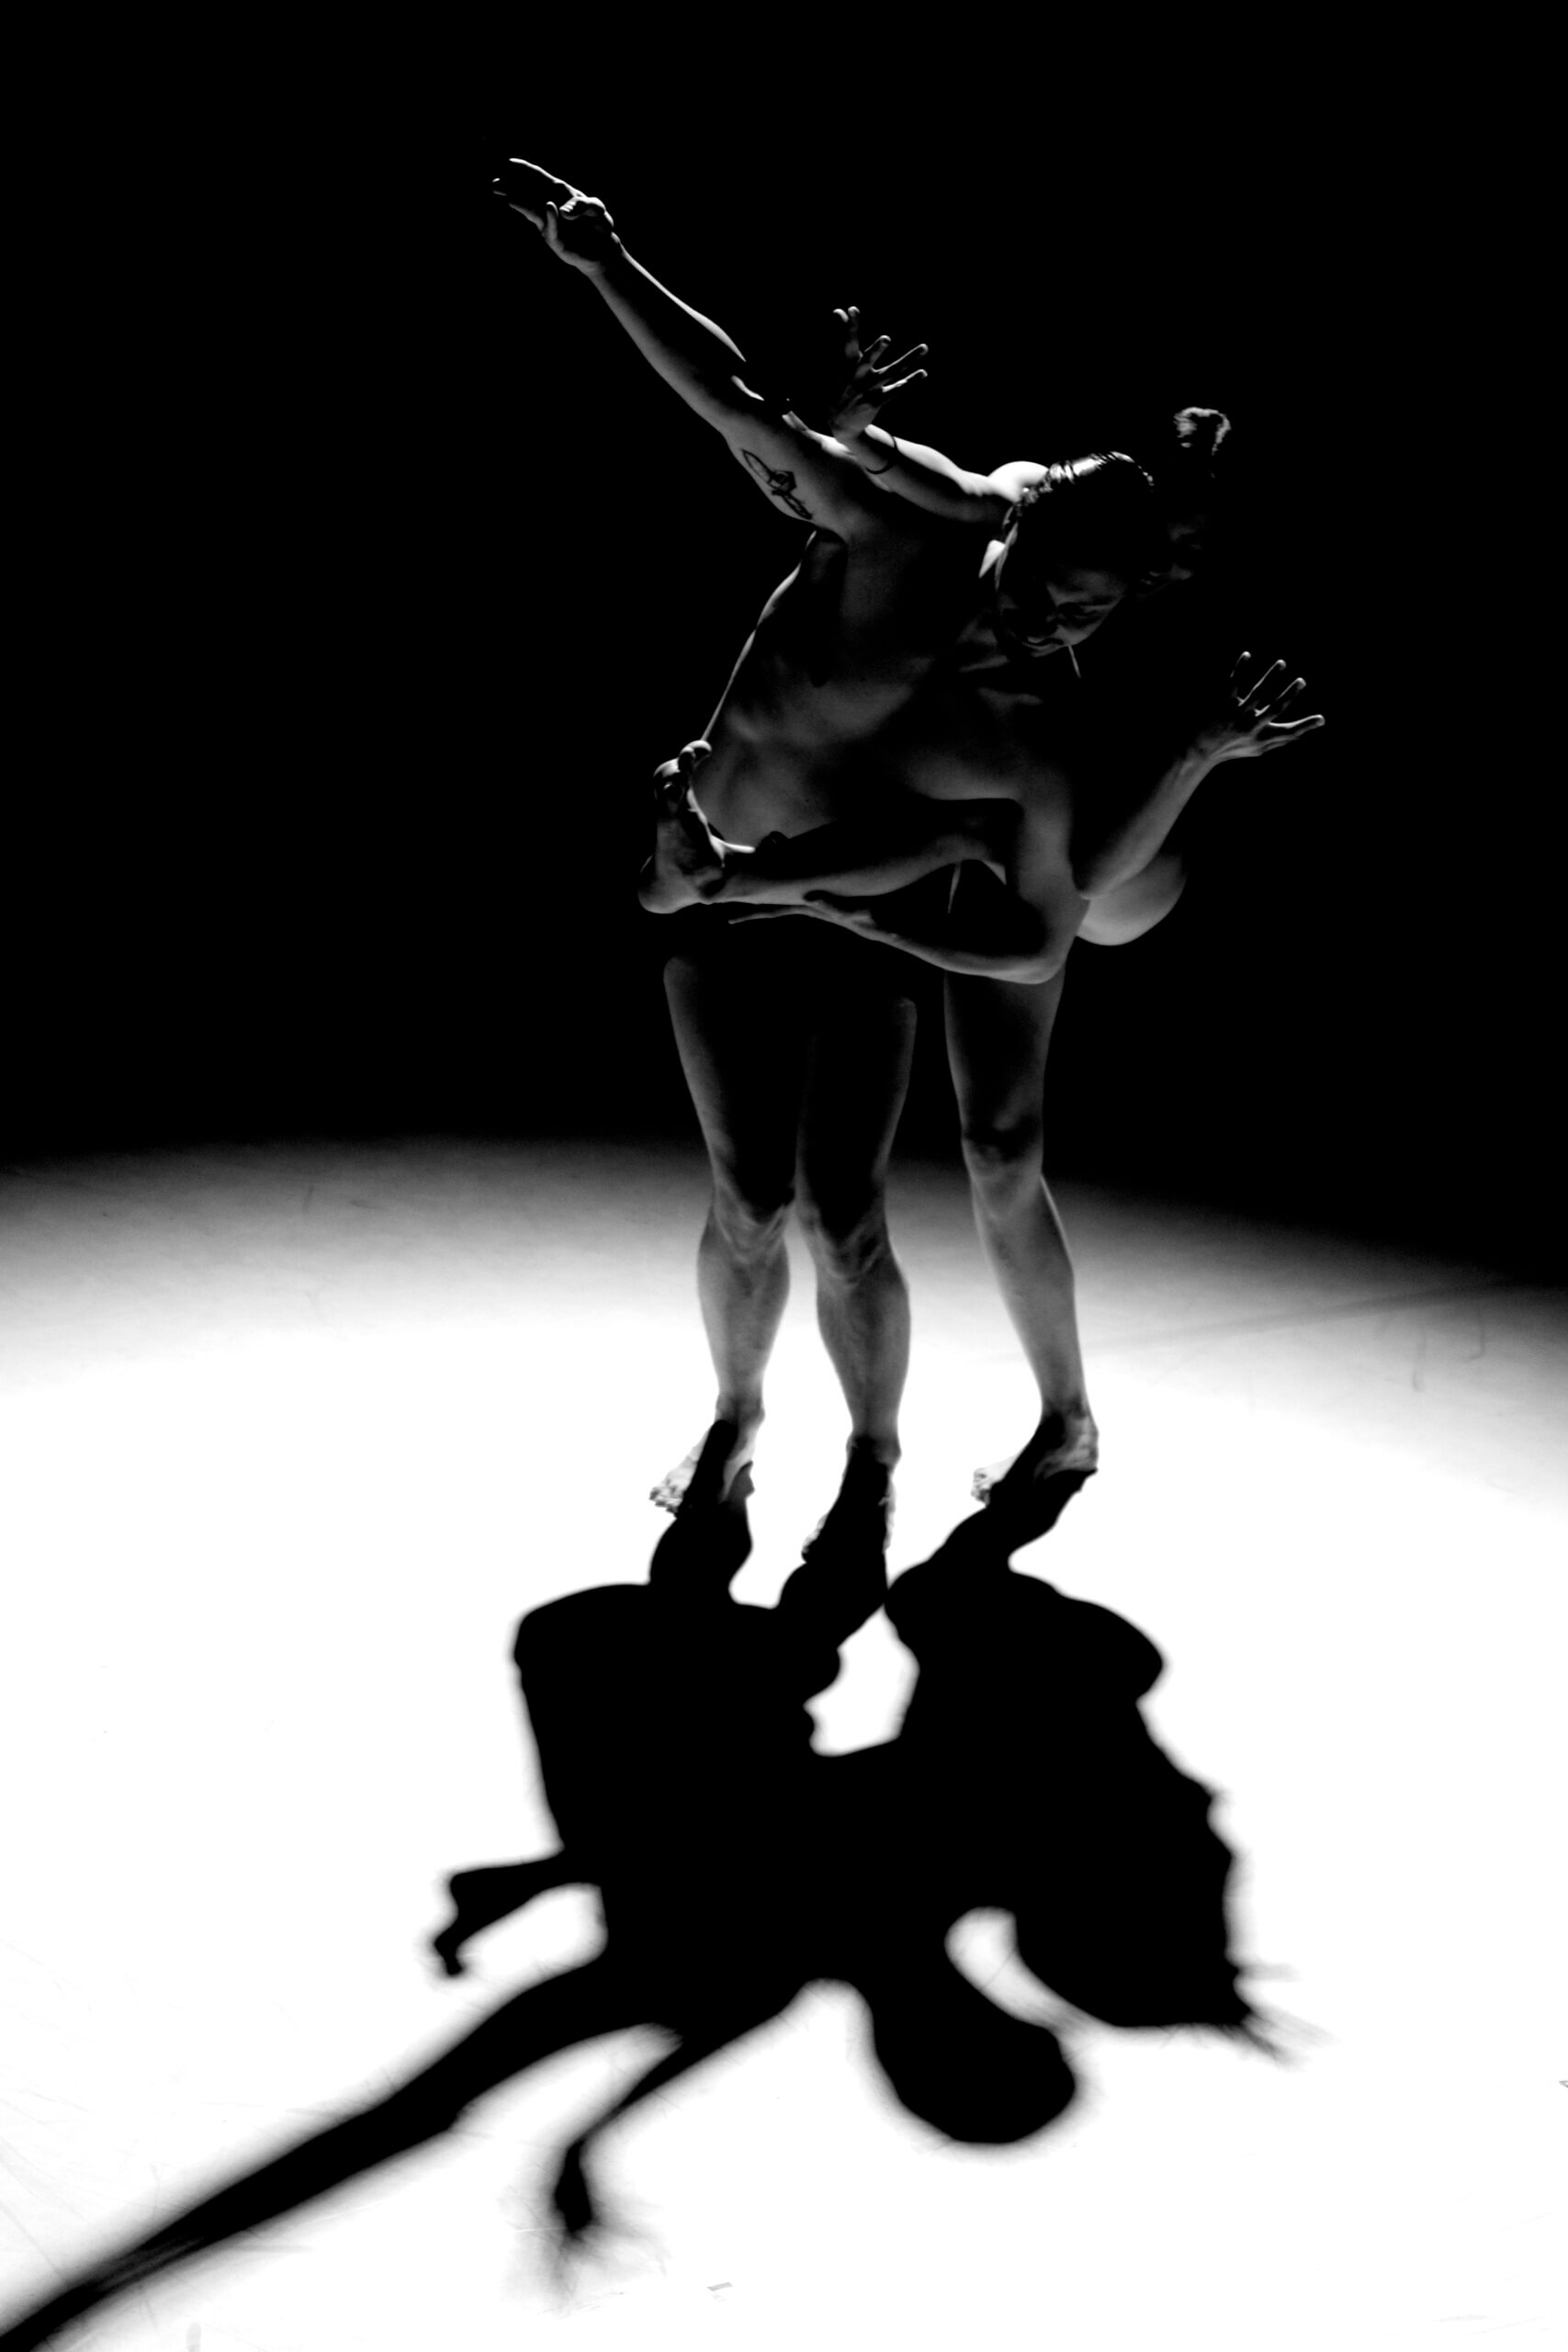 Zdjęcie illumination. Zdjęcie czarno-białe. Na zdjęciu znajdują się dwie osoby.